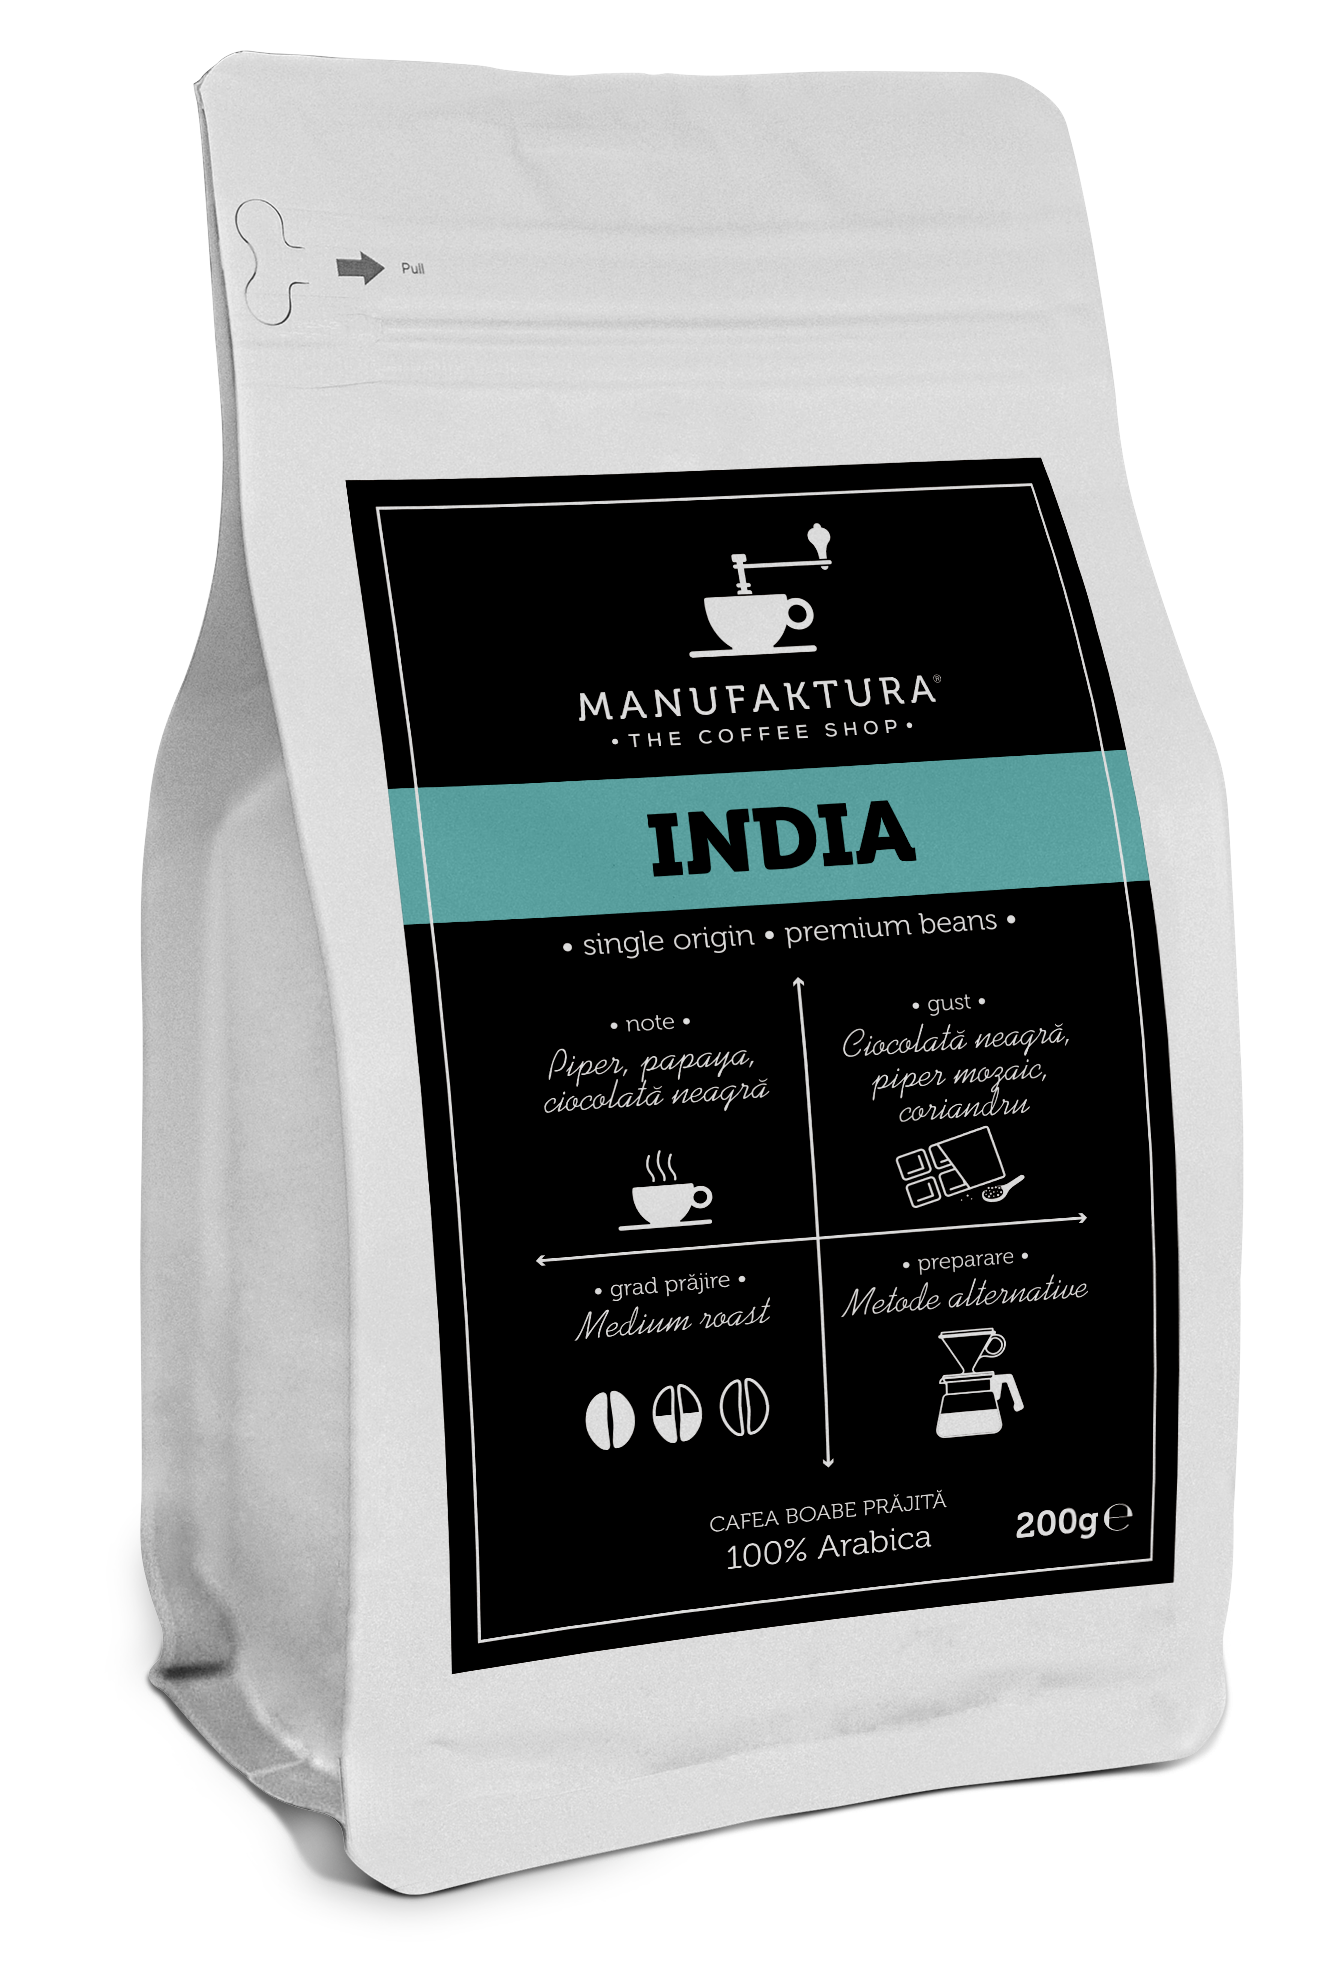  Cafea boabe - India | Manufaktura 